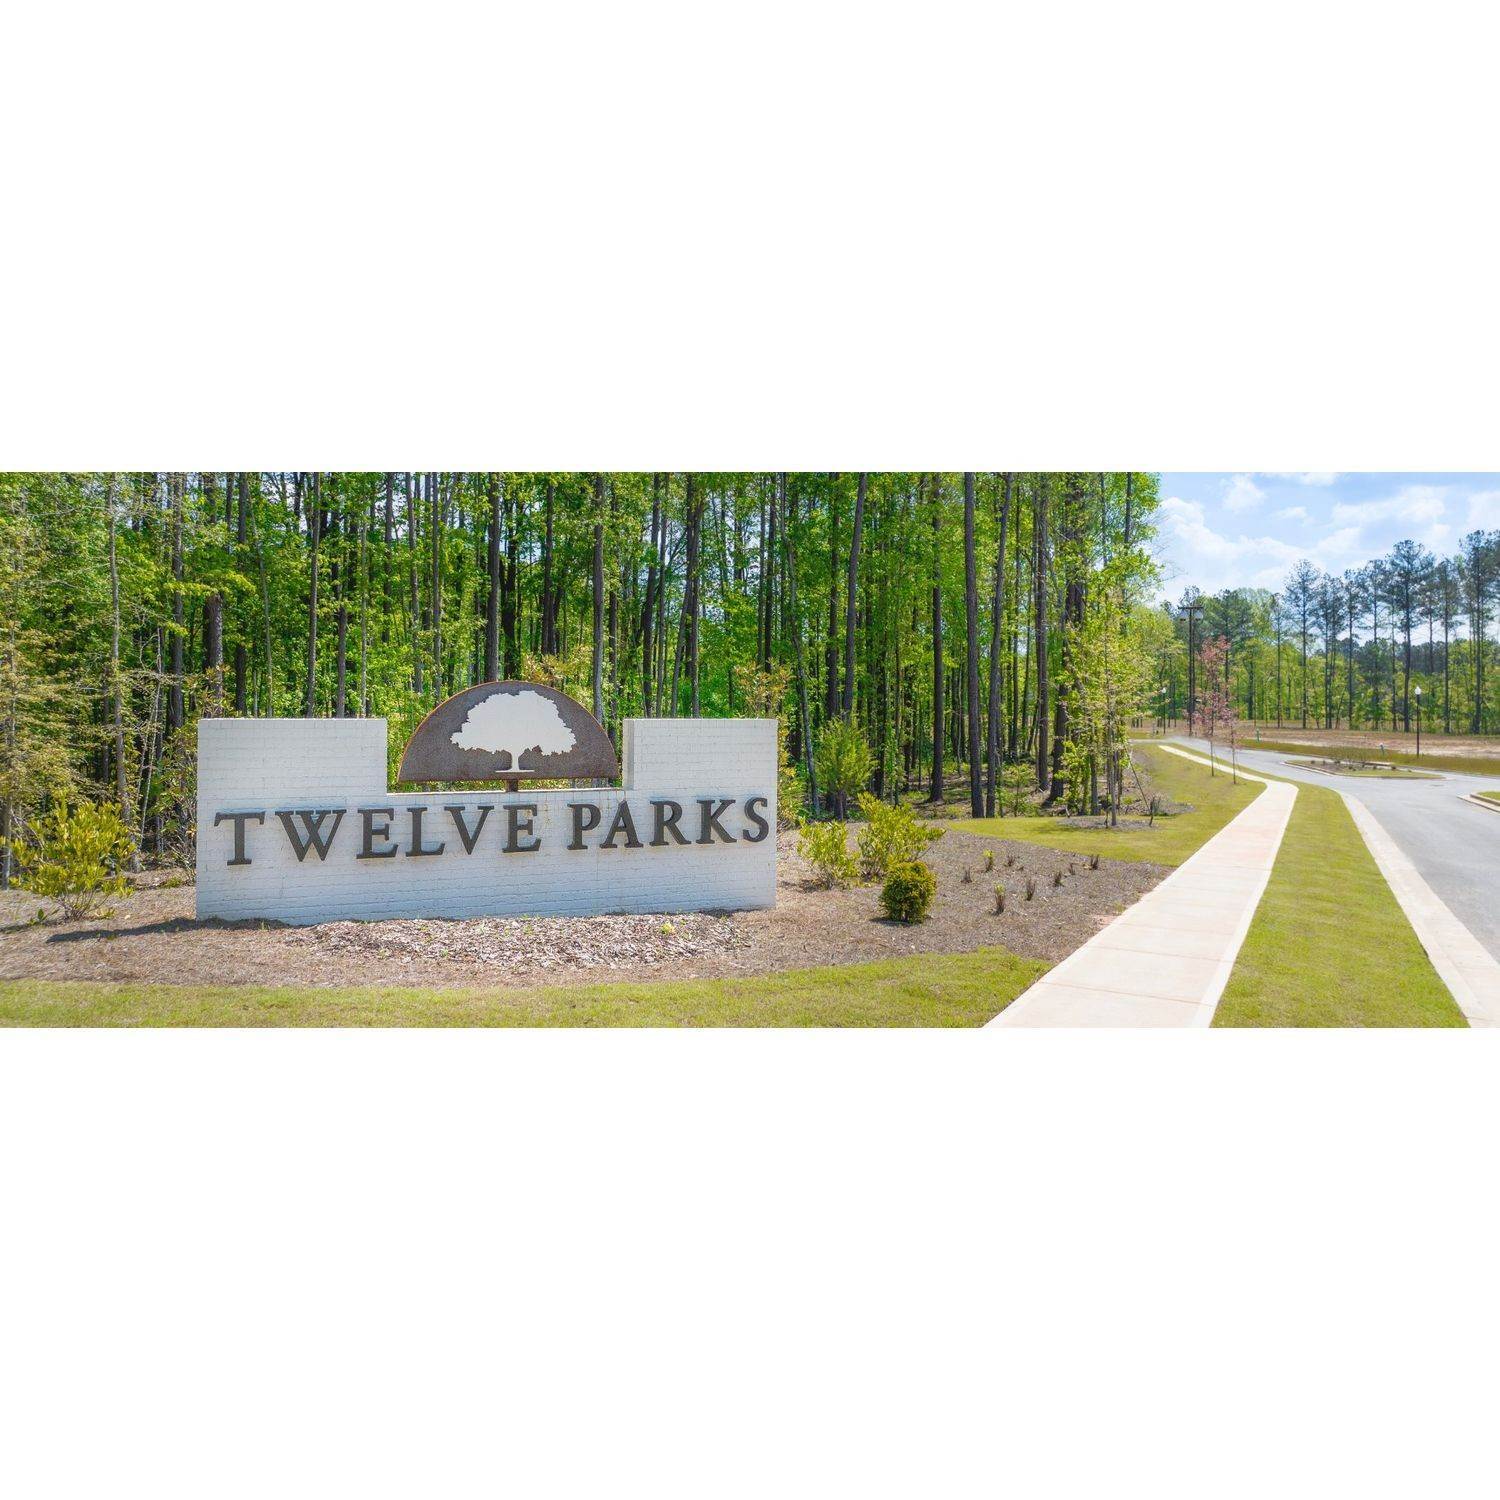 6. Twelve Parks - Twelve Parks 2 Story building at 8 Foothills Trail, Sharpsburg, GA 30277